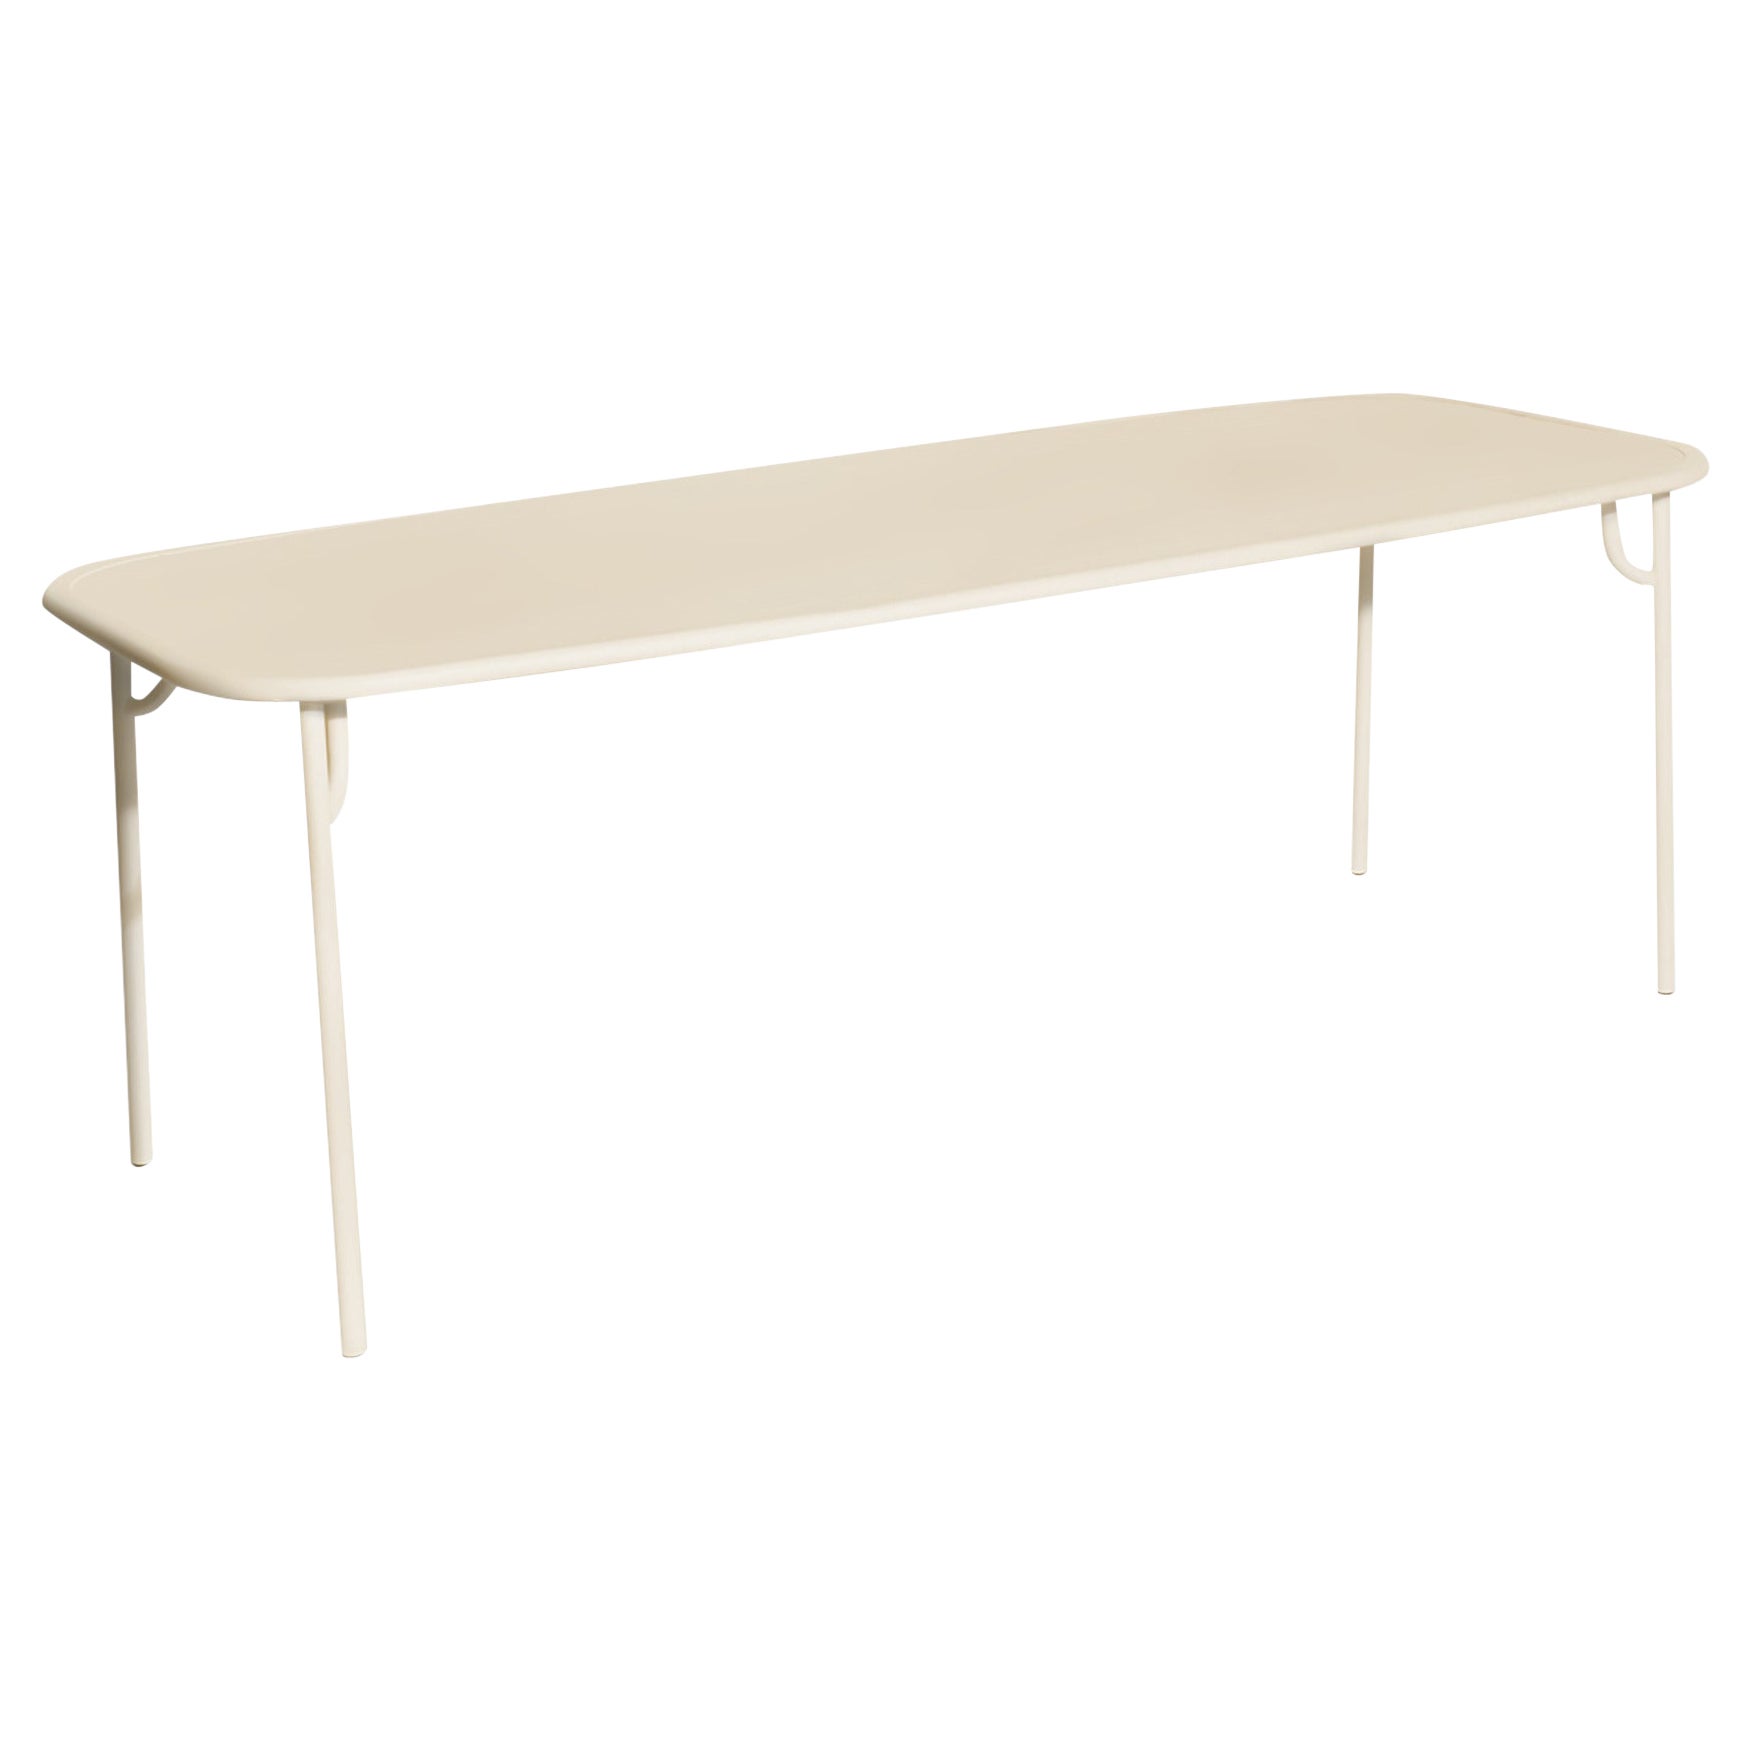 Petite table à manger rectangulaire simple Week-end en aluminium ivoire de Friture